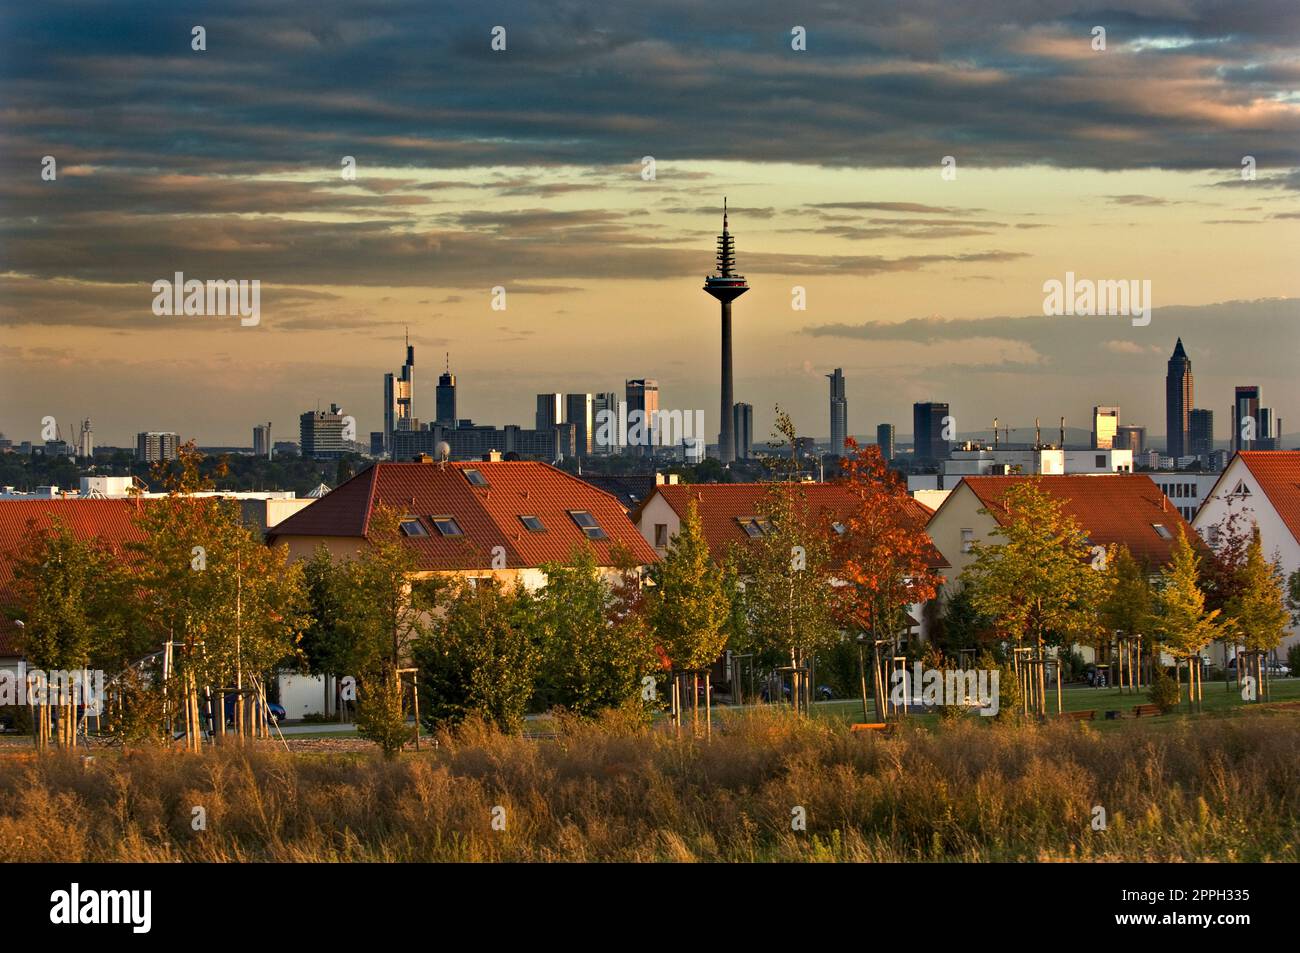 Die Skyline von Frankfurt am Main am Horizont mit einer Vorstadt im Vordergrund. Stockfoto